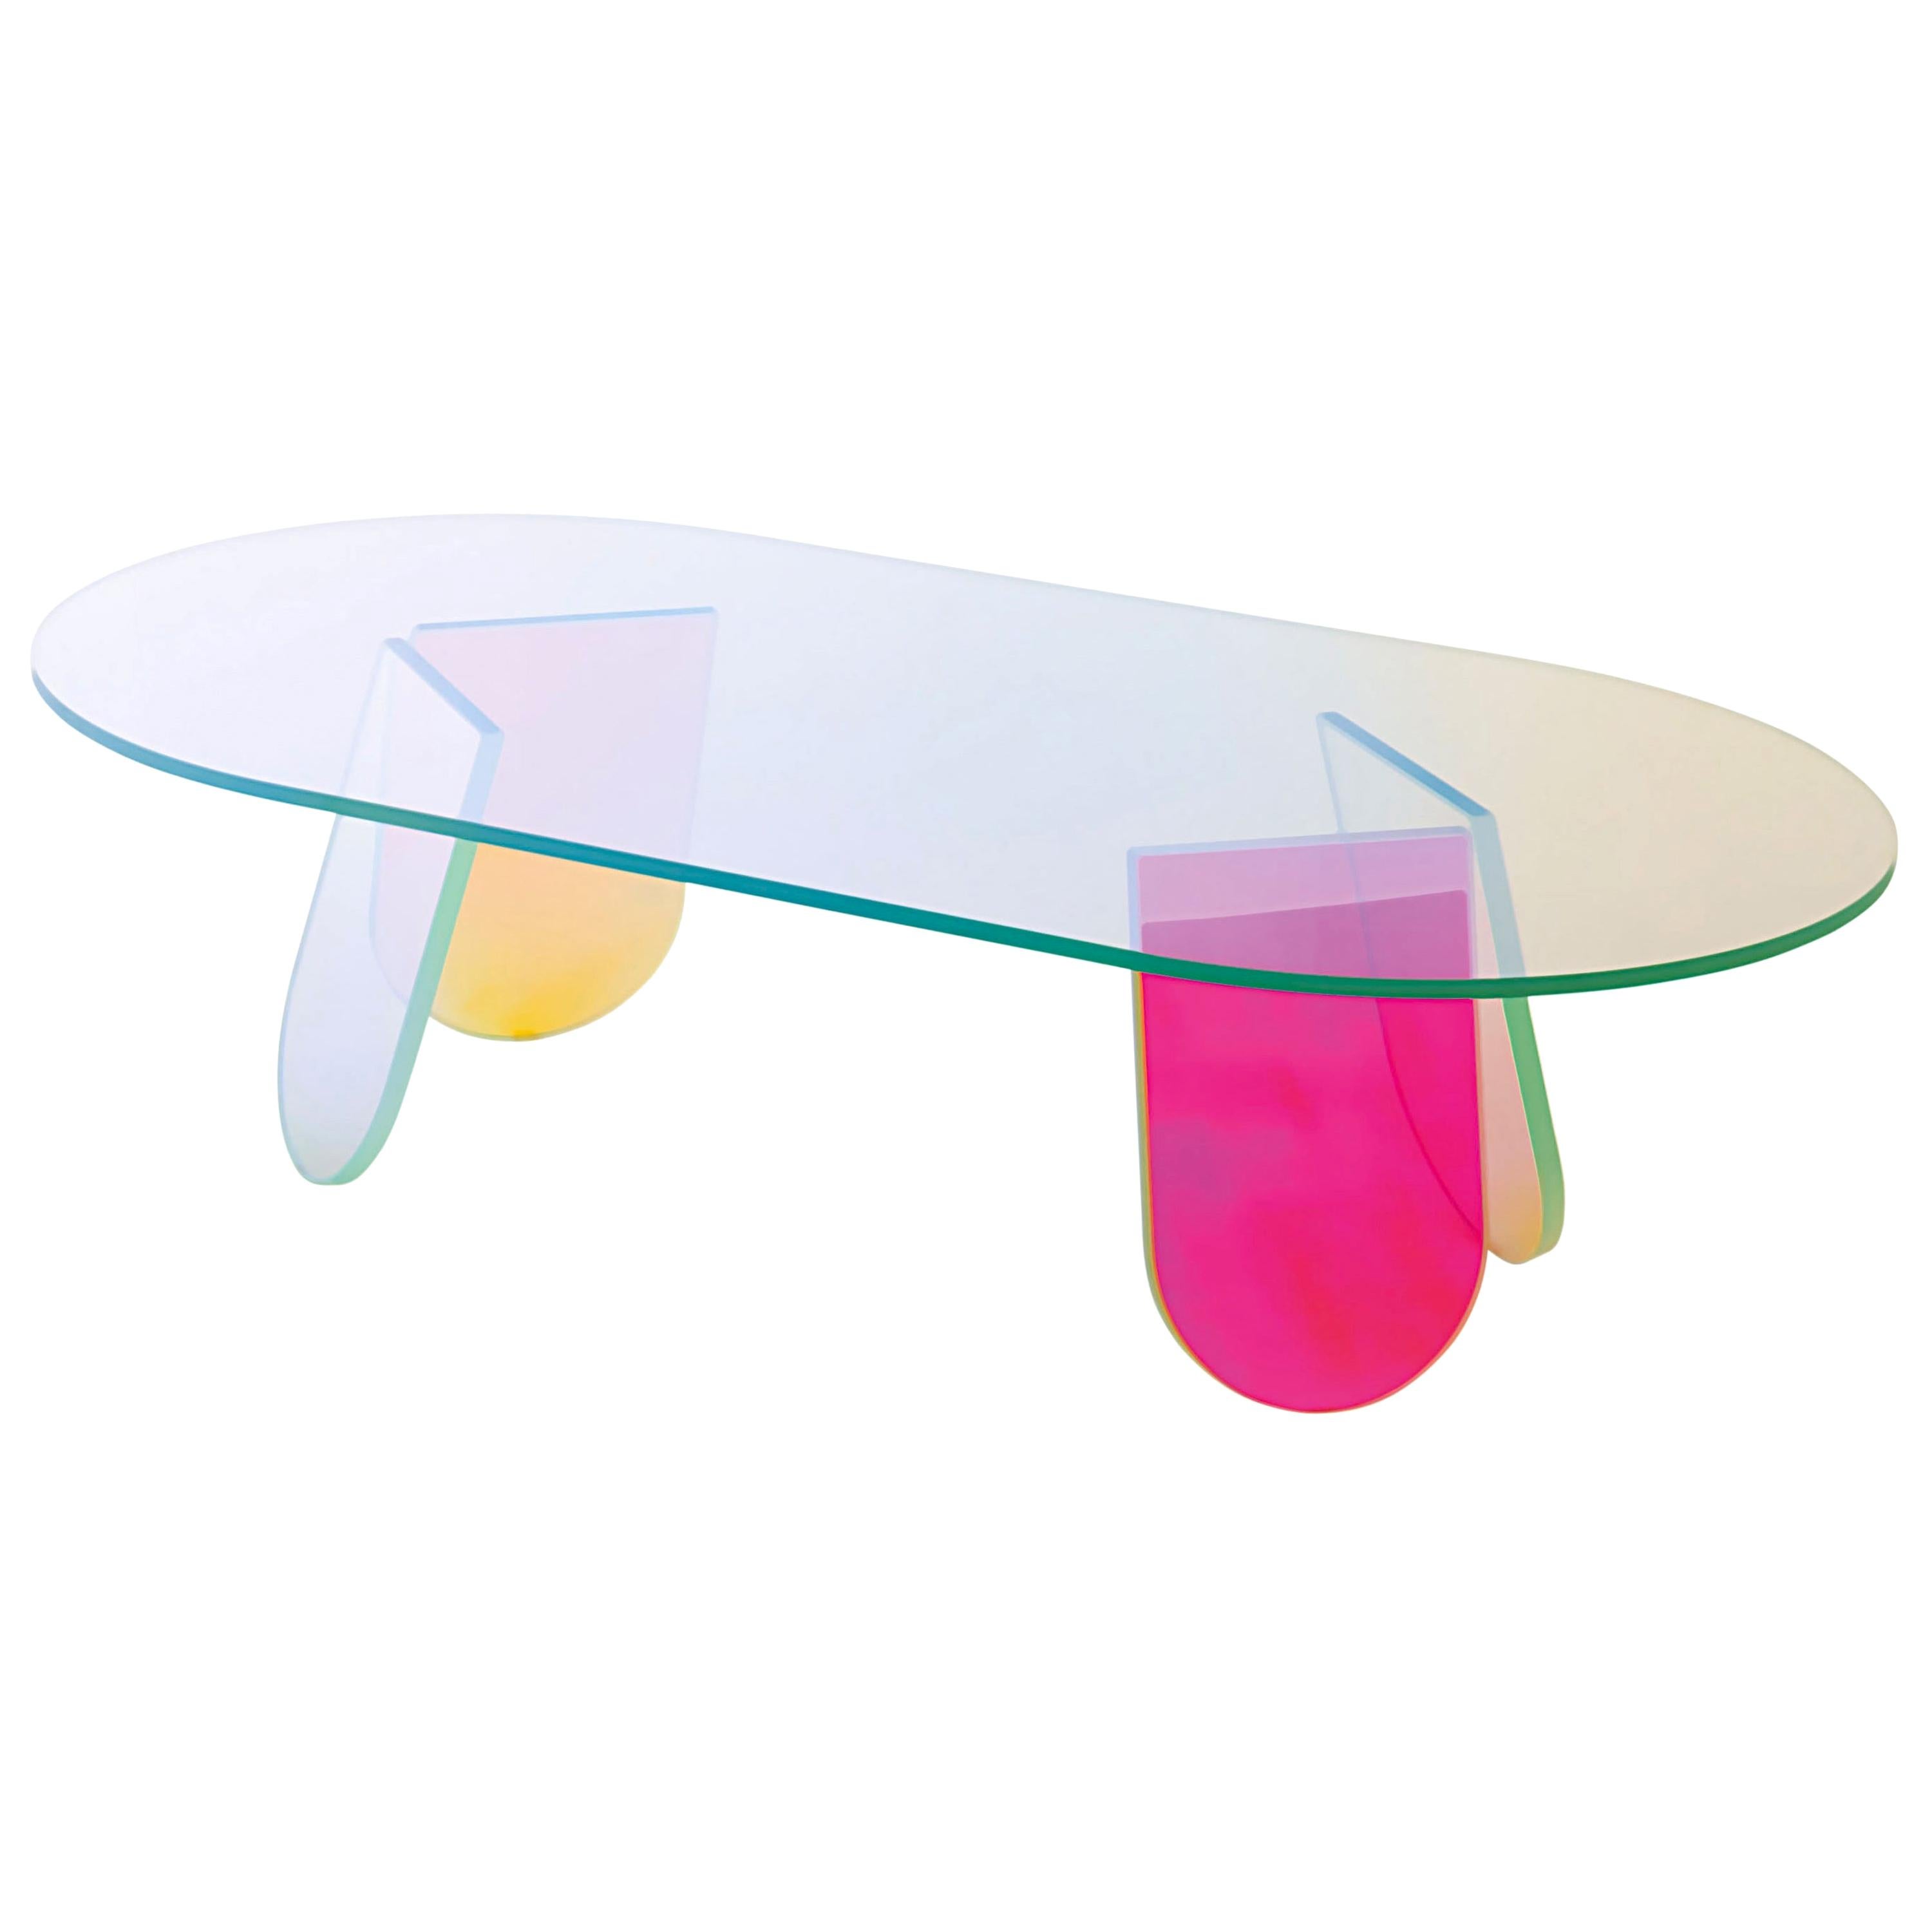 Petite table basse ovale chatoyante, par Patricia Urquiola pour Glas Italia, EN STOCK en vente